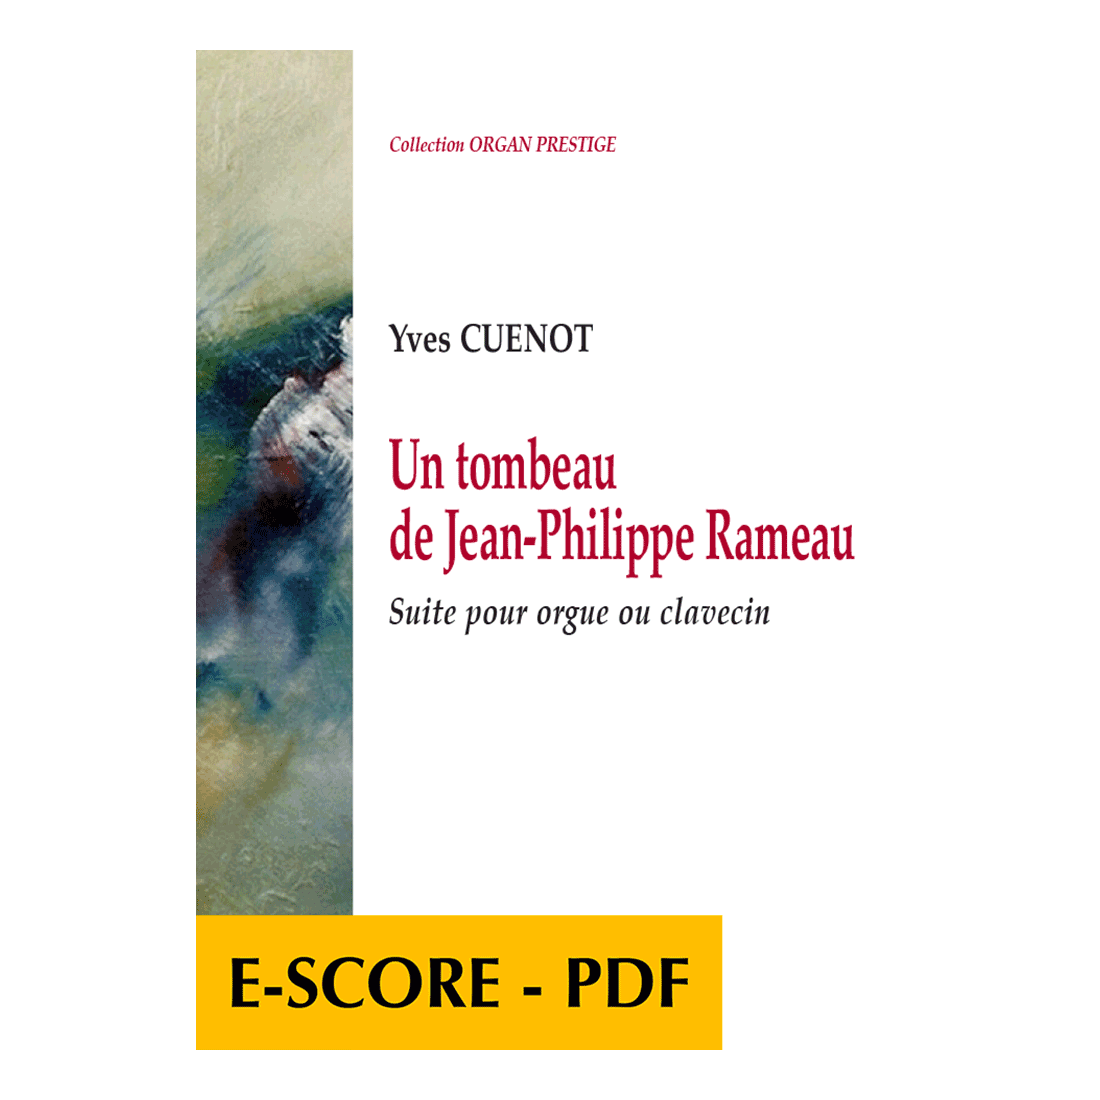 Un tombeau de Jean-Philippe Rameau - E-score PDF